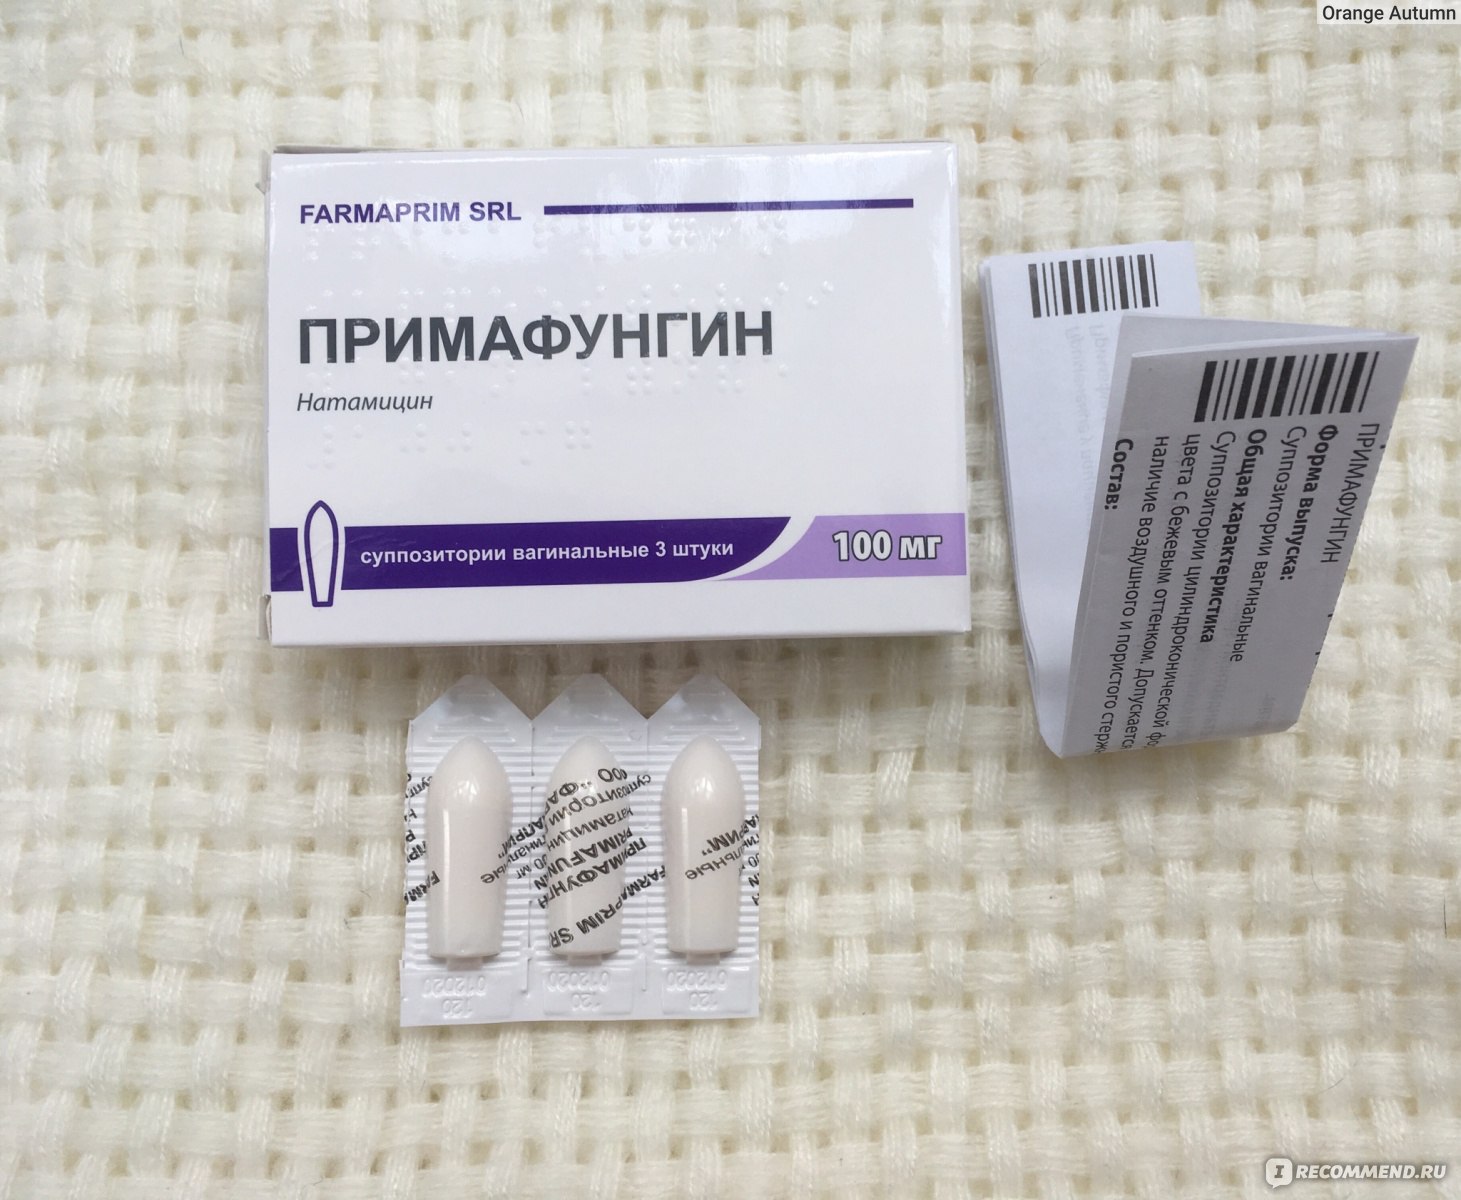 Противогрибковое средство Примафунгин - «Примафунгин или Пимафуцин .